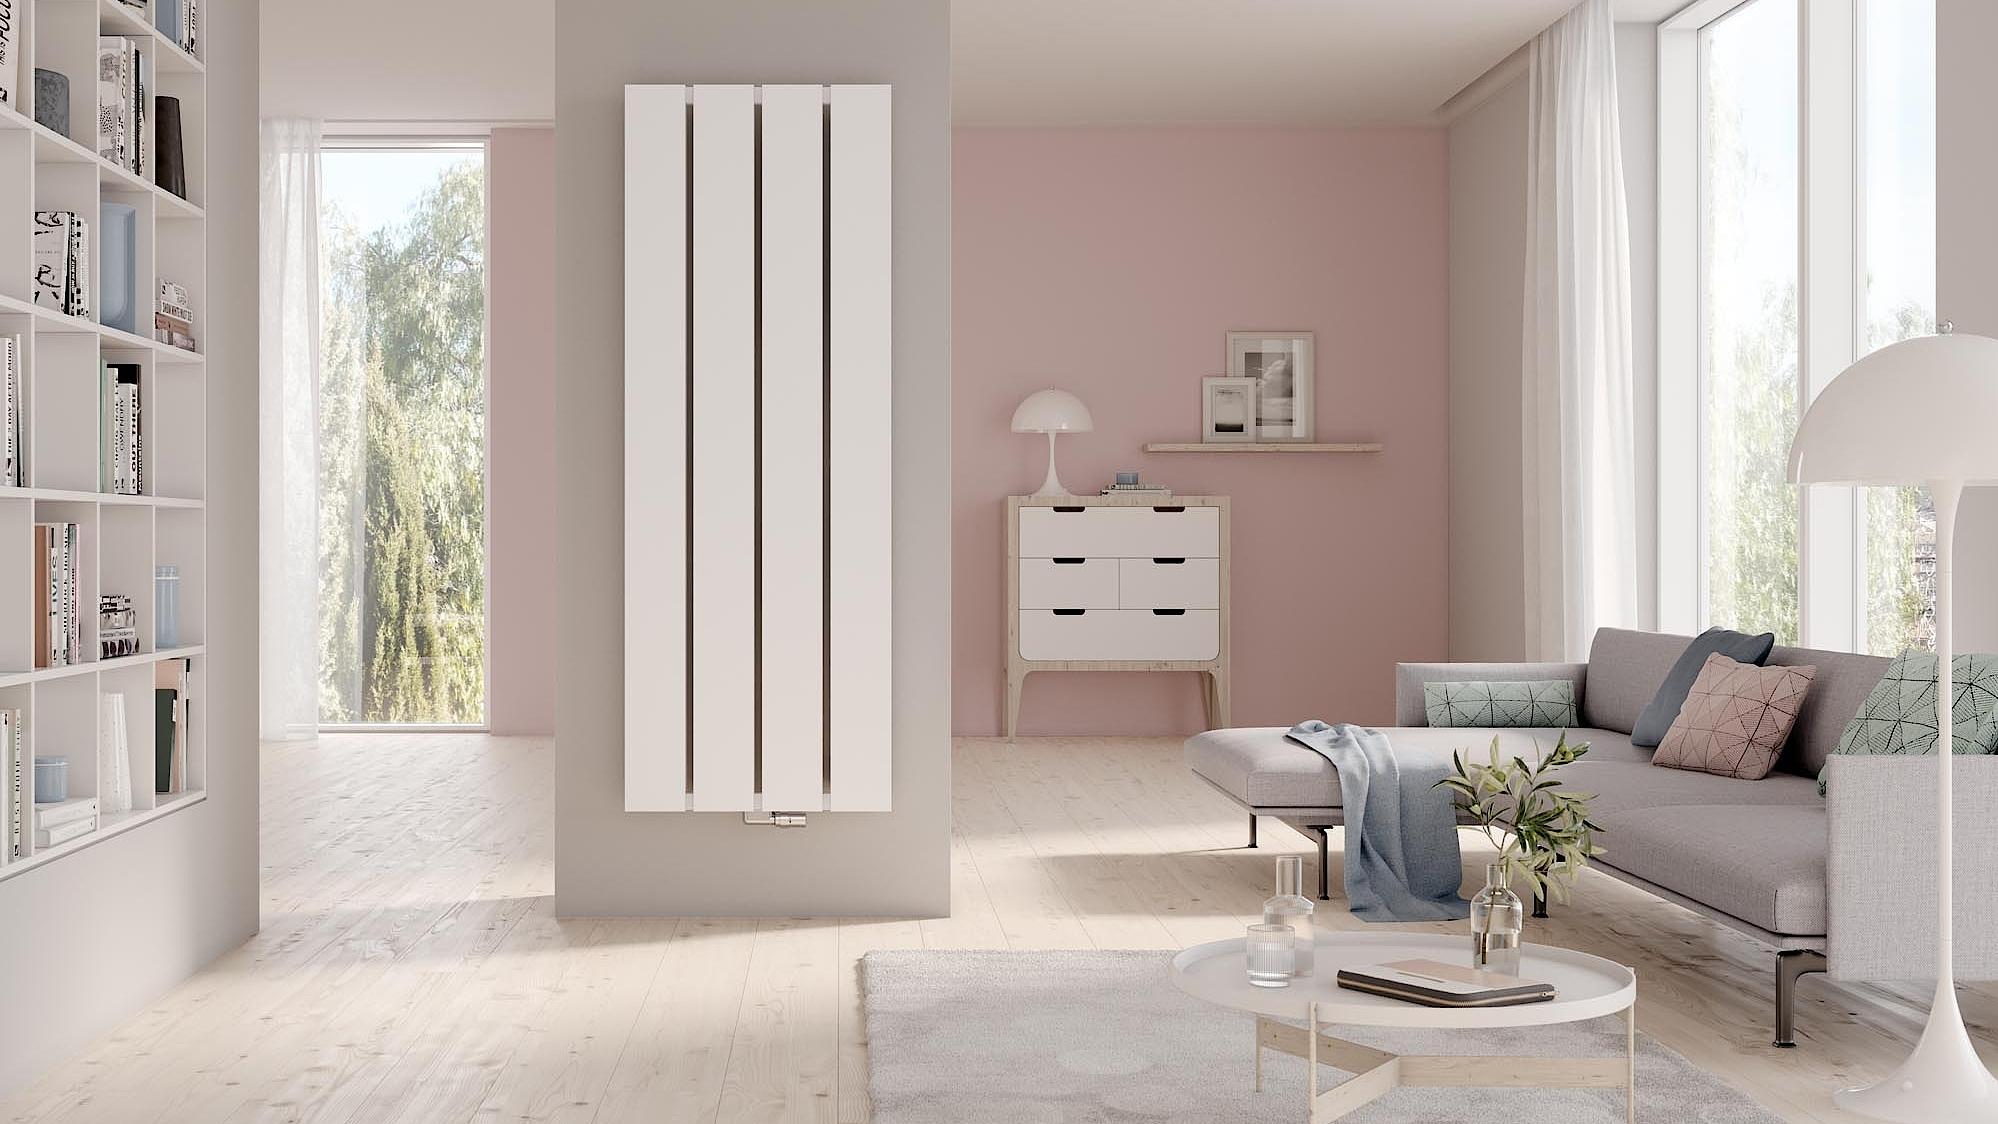 Designové a koupelnové otopné těleso Kermi Decor-Arte Plan inspiruje moderním a minimalistickým designem.